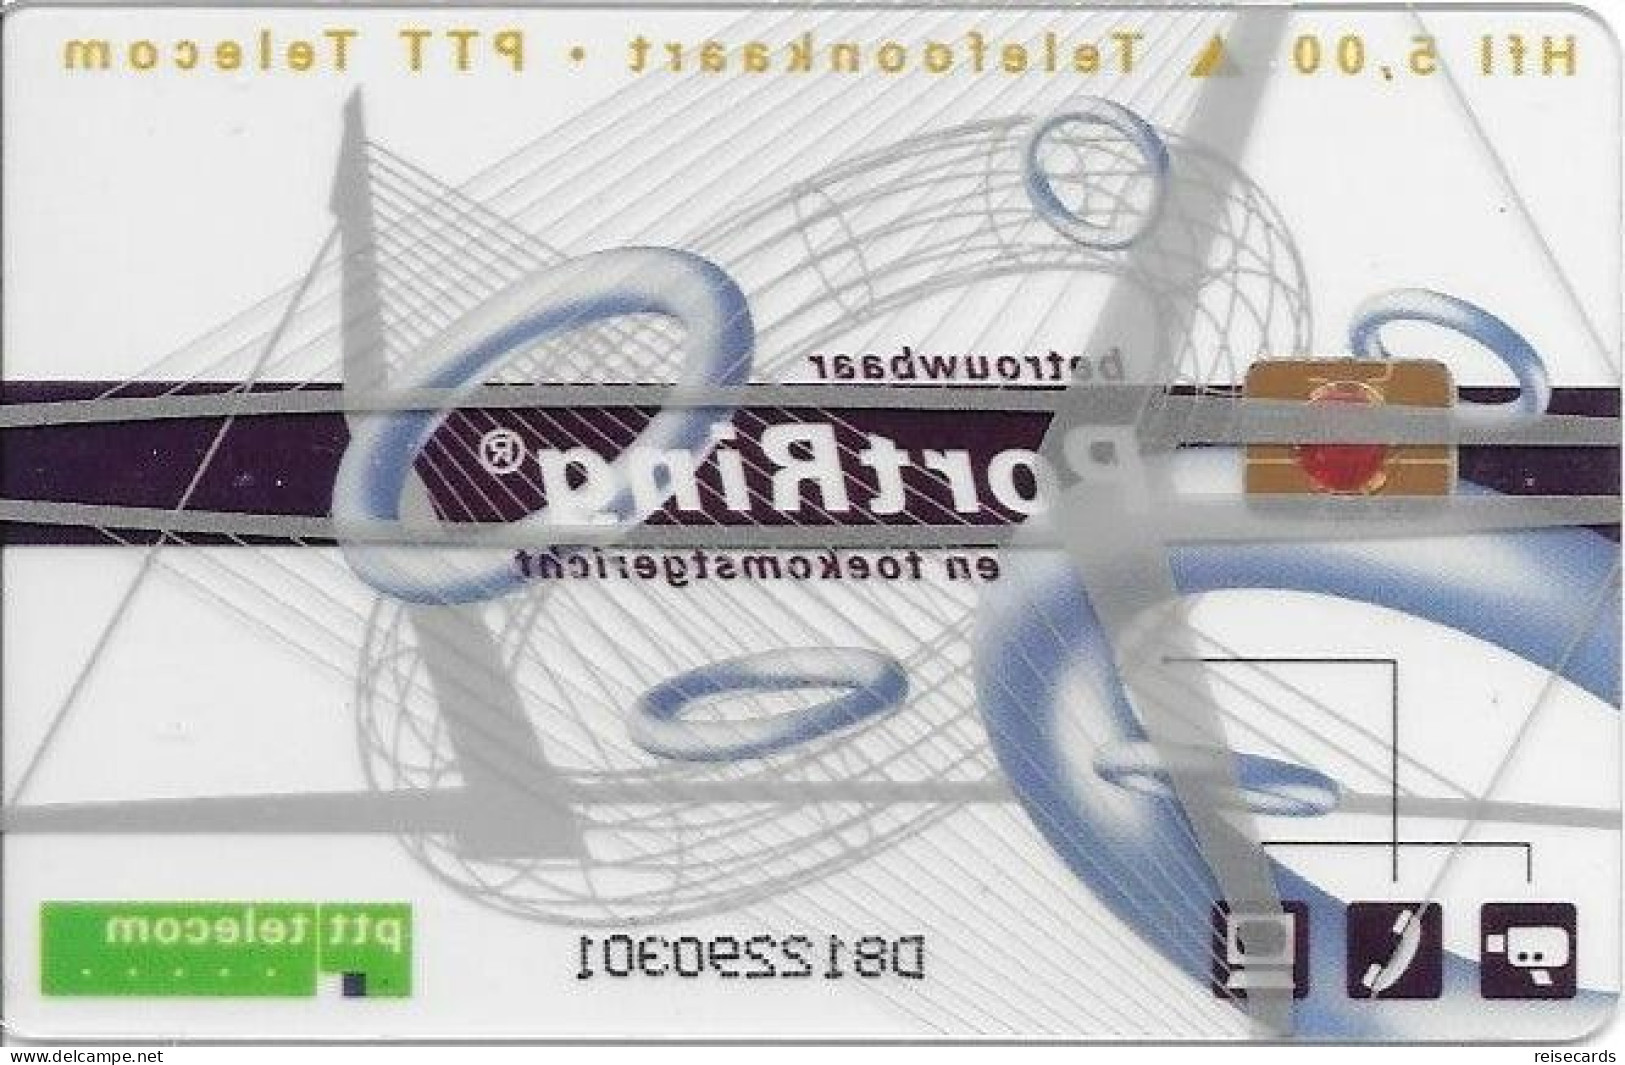 Netherlands: Ptt Telecom - 1997 PortRing. Mint, Transparent - Openbaar